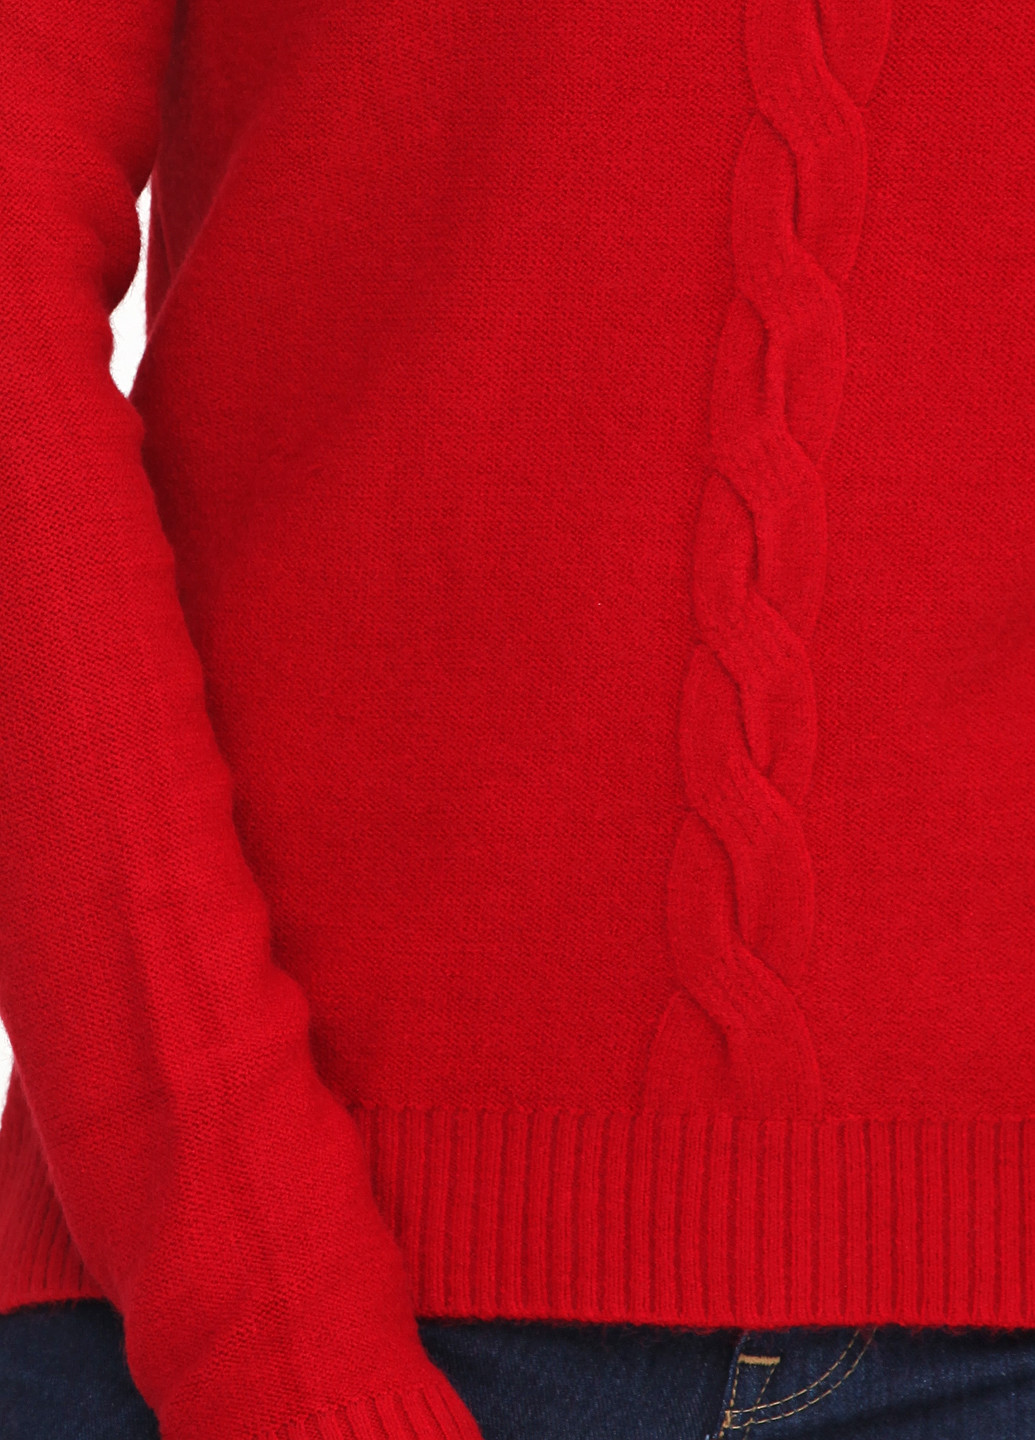 Красный демисезонный пуловер пуловер Cashmere Company